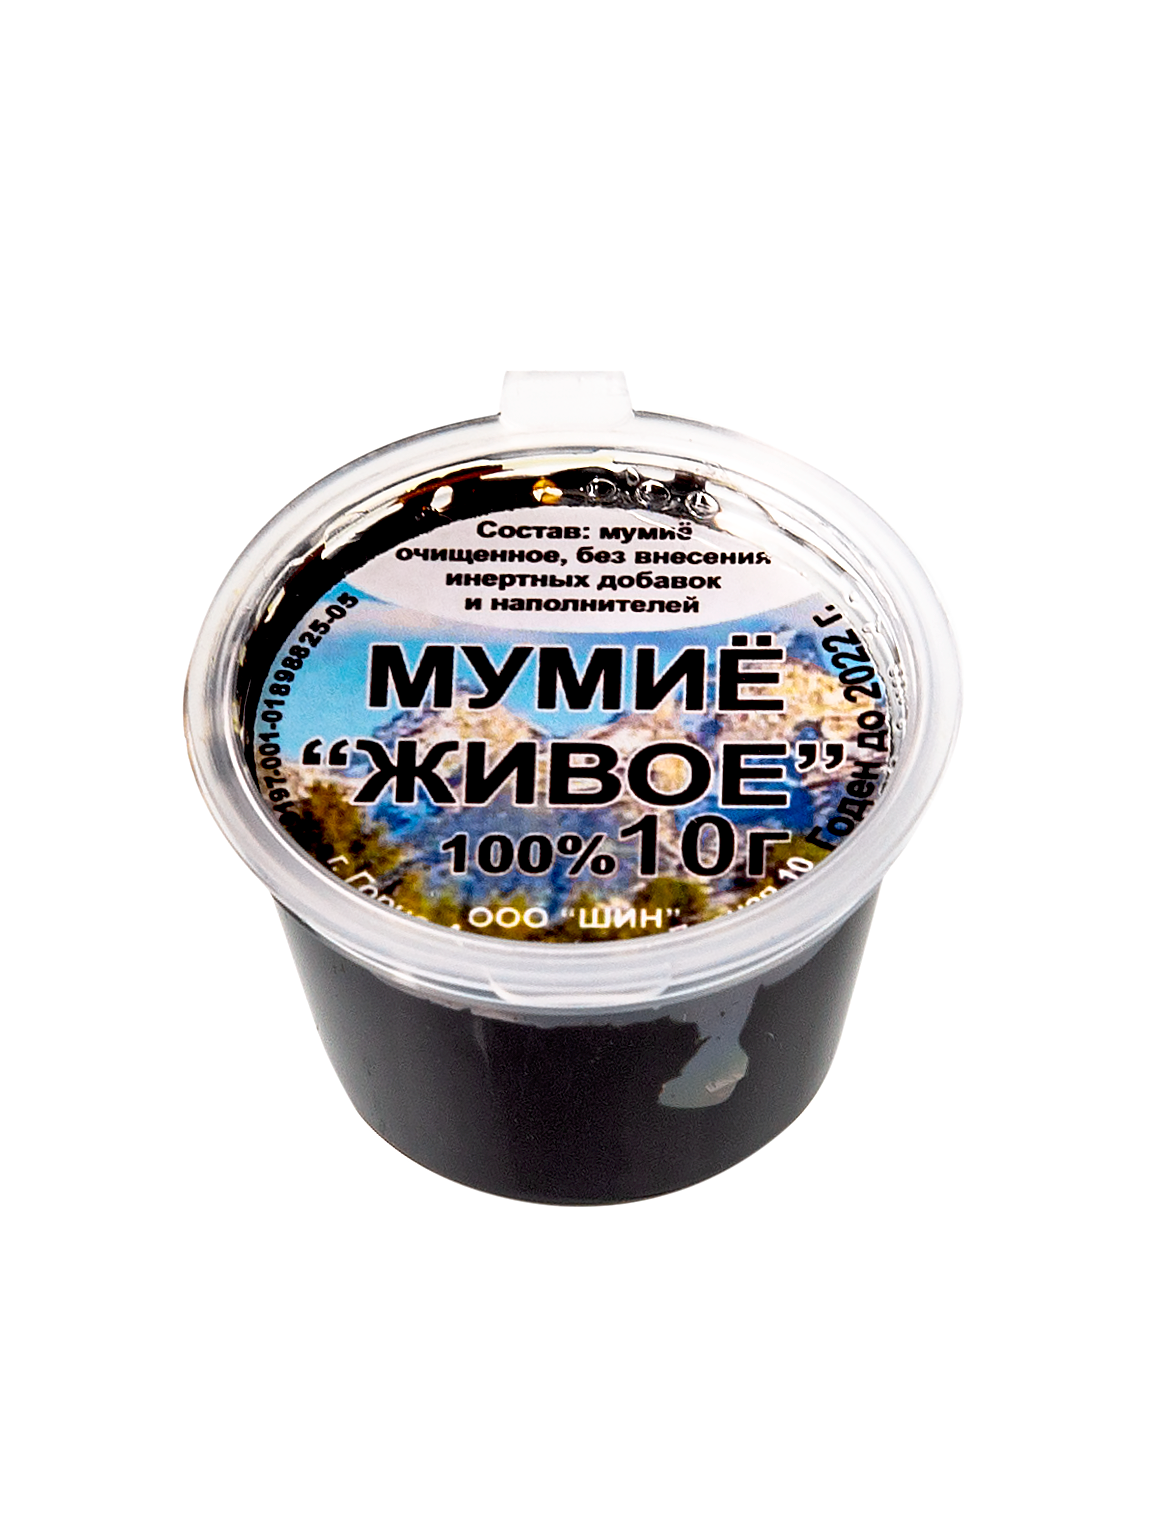 Мумиё Алтайское без добавок в Иркутске